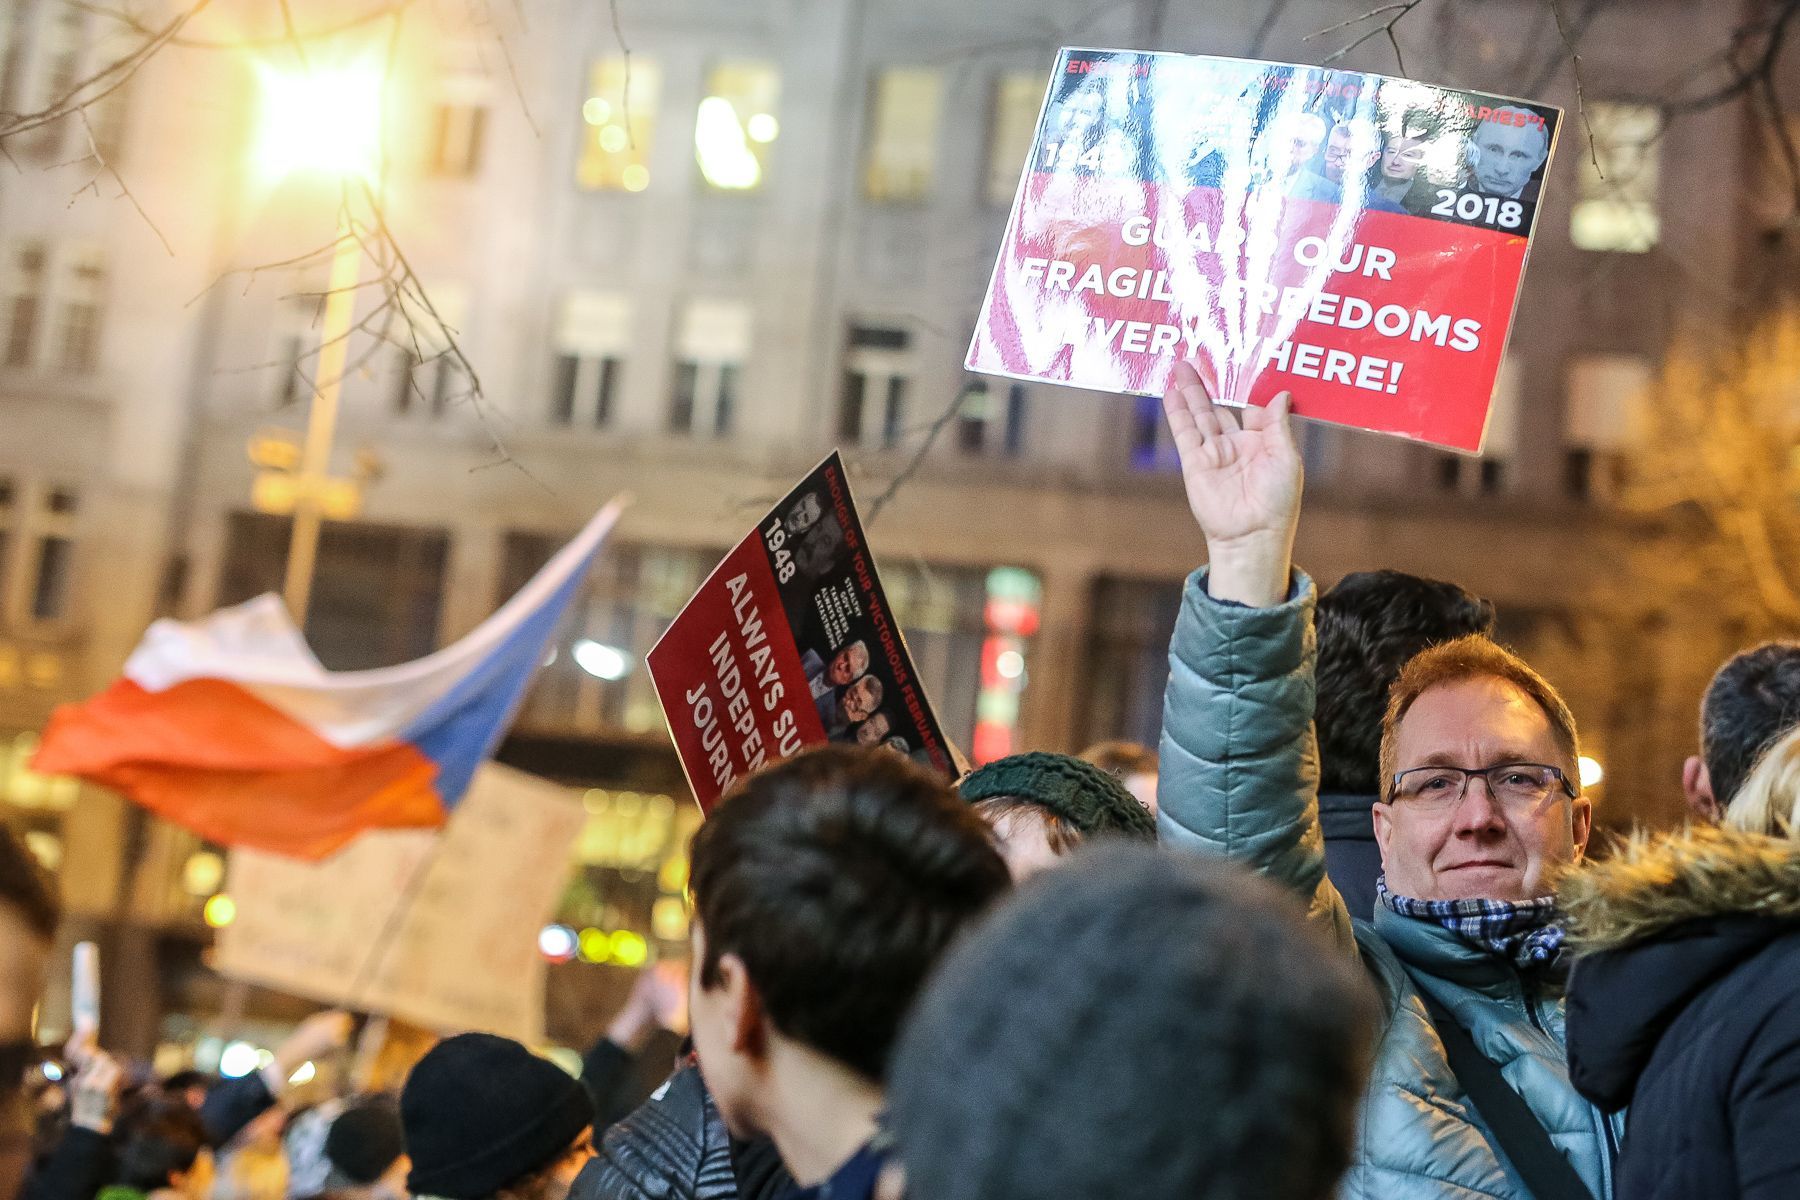 Demonstrace proti Ondráčkovi a Babišovi v Praze na Václavském náměstí